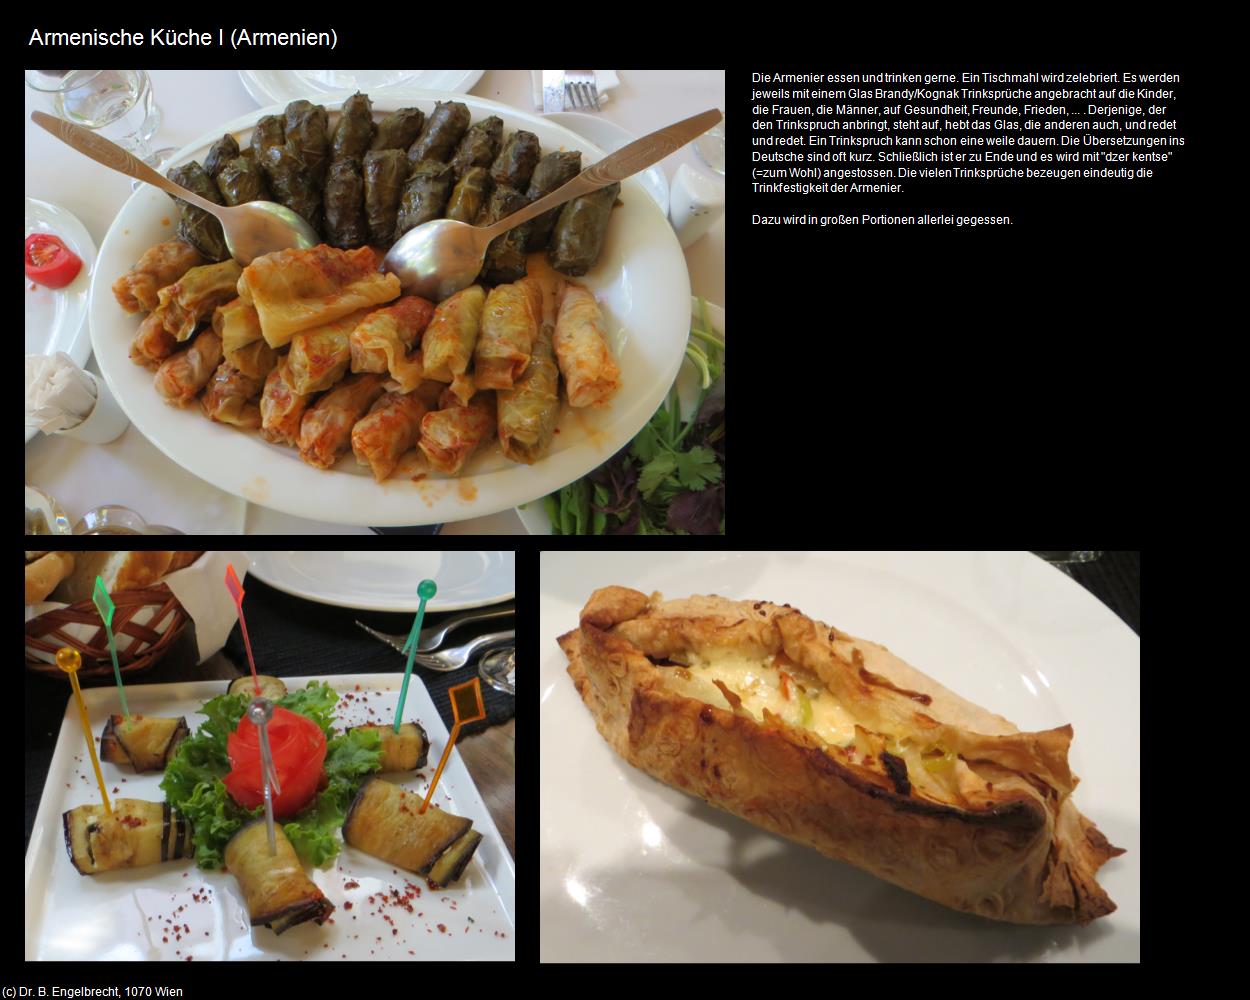 Armenische Küche I (+Allgemein) in Kulturatlas-ARMENIEN